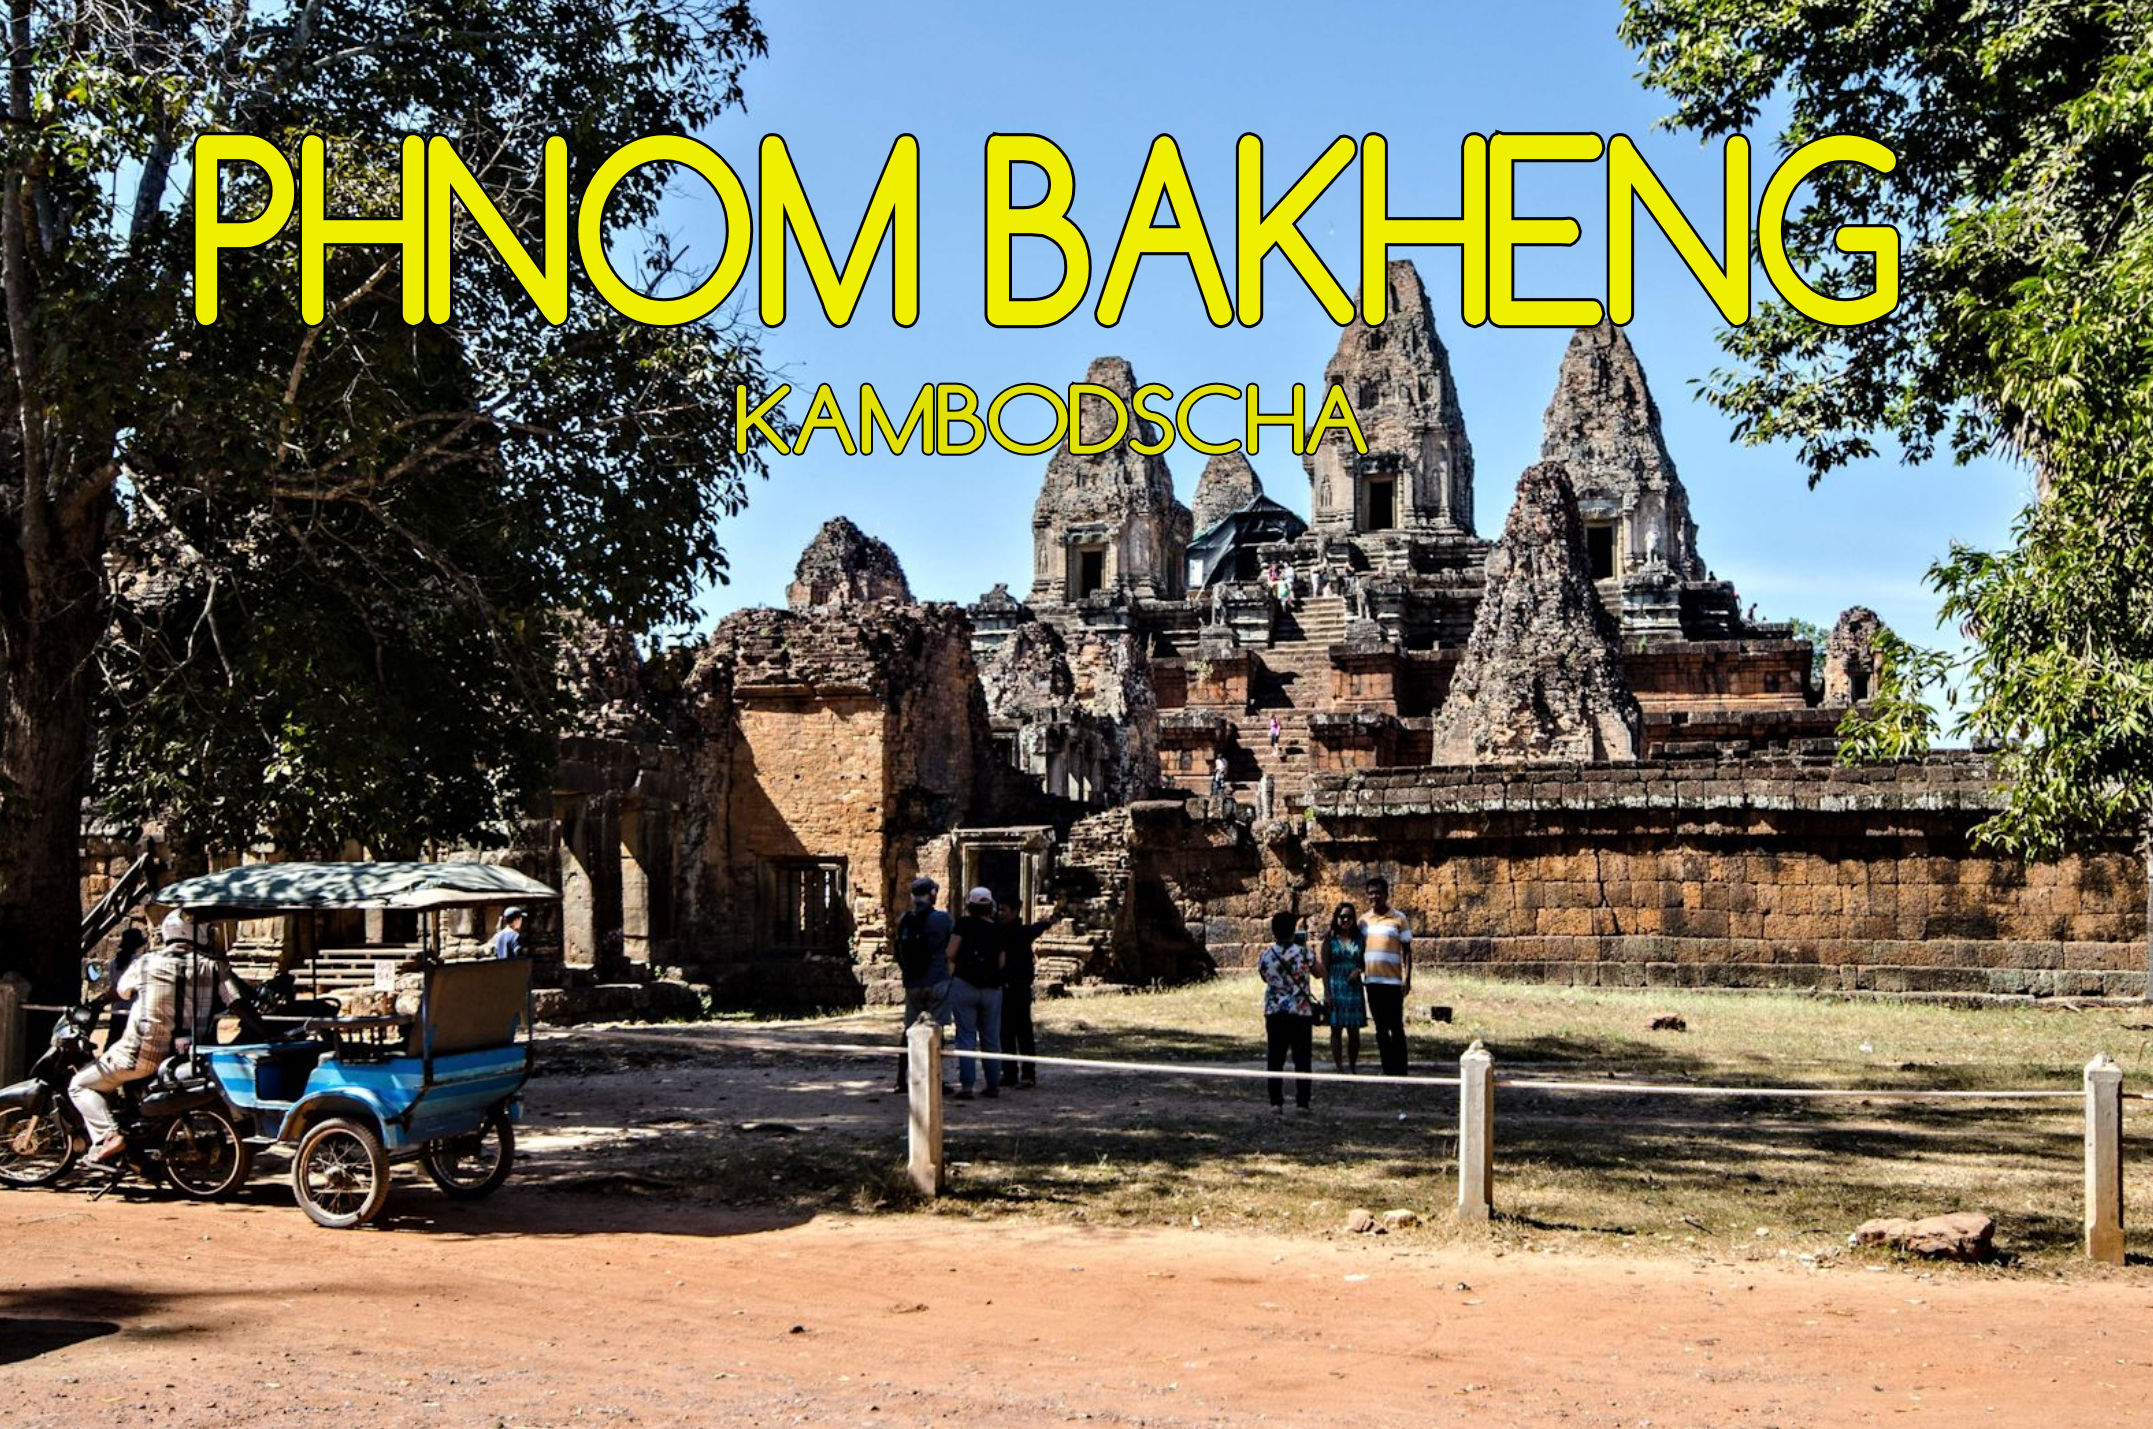 Phnom Bakheng Mogroach